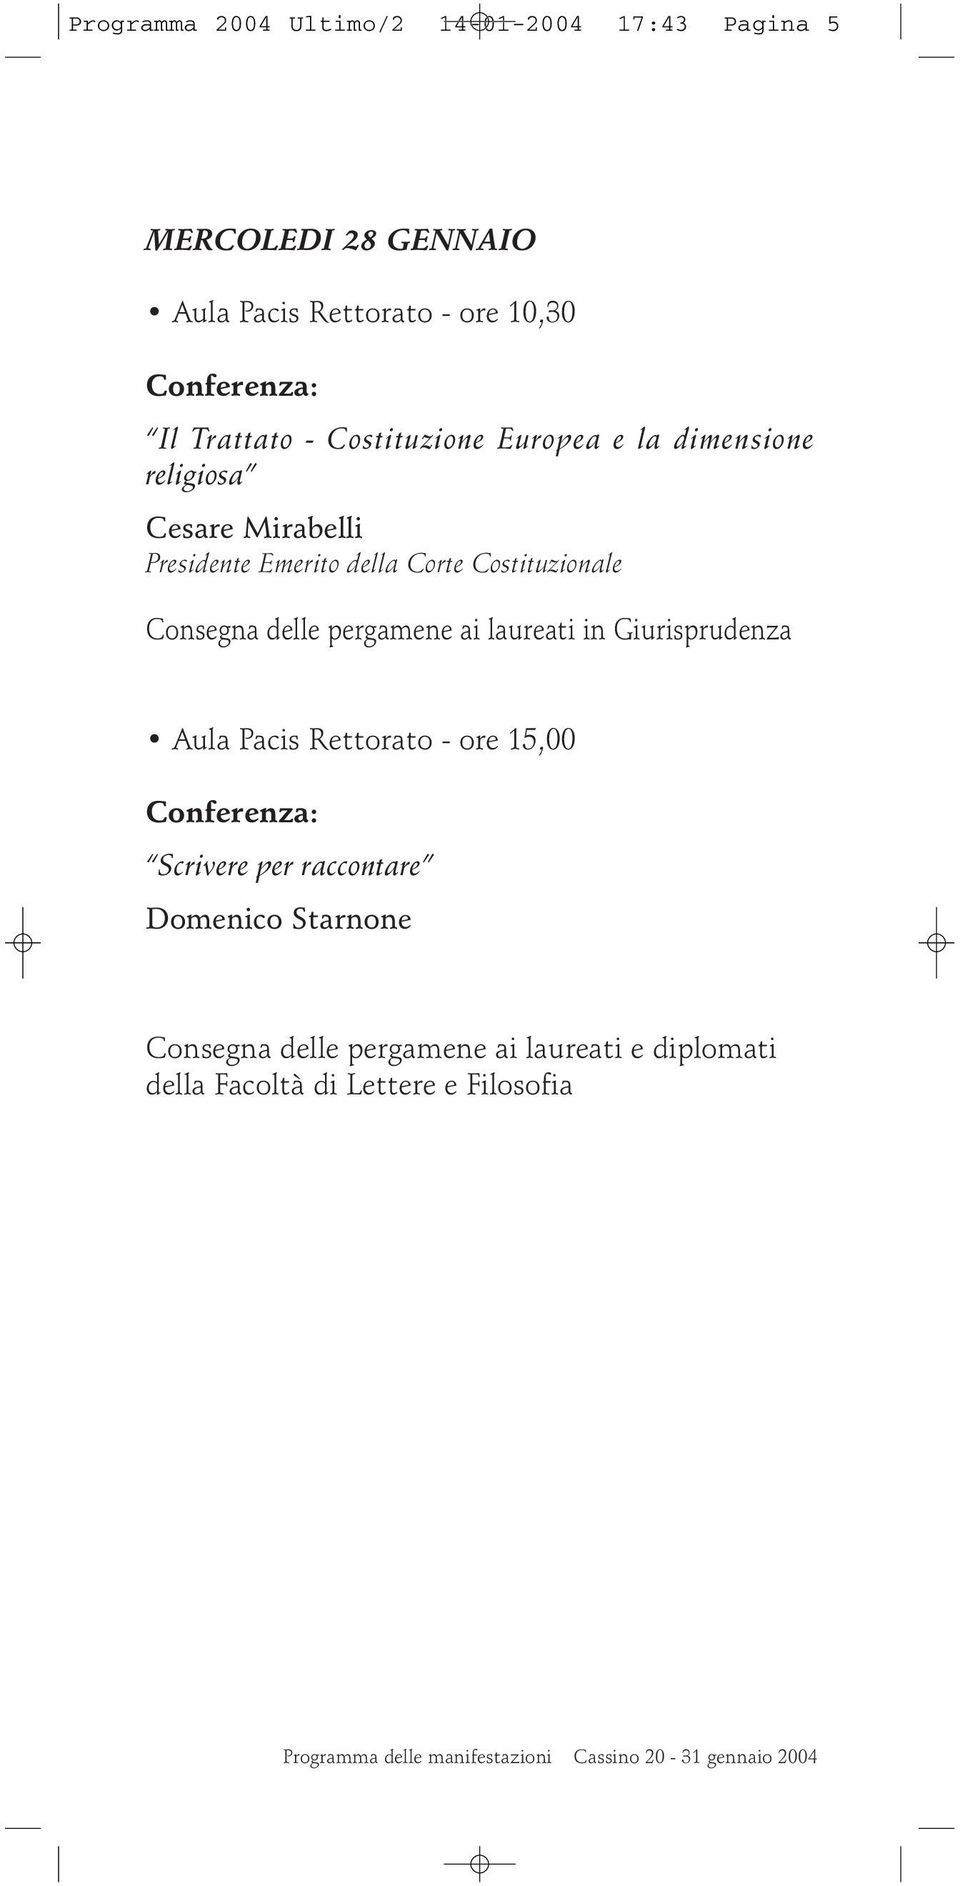 pergamene ai laureati in Giurisprudenza Aula Pacis Rettorato - ore 15,00 Scrivere per raccontare Domenico Starnone Consegna